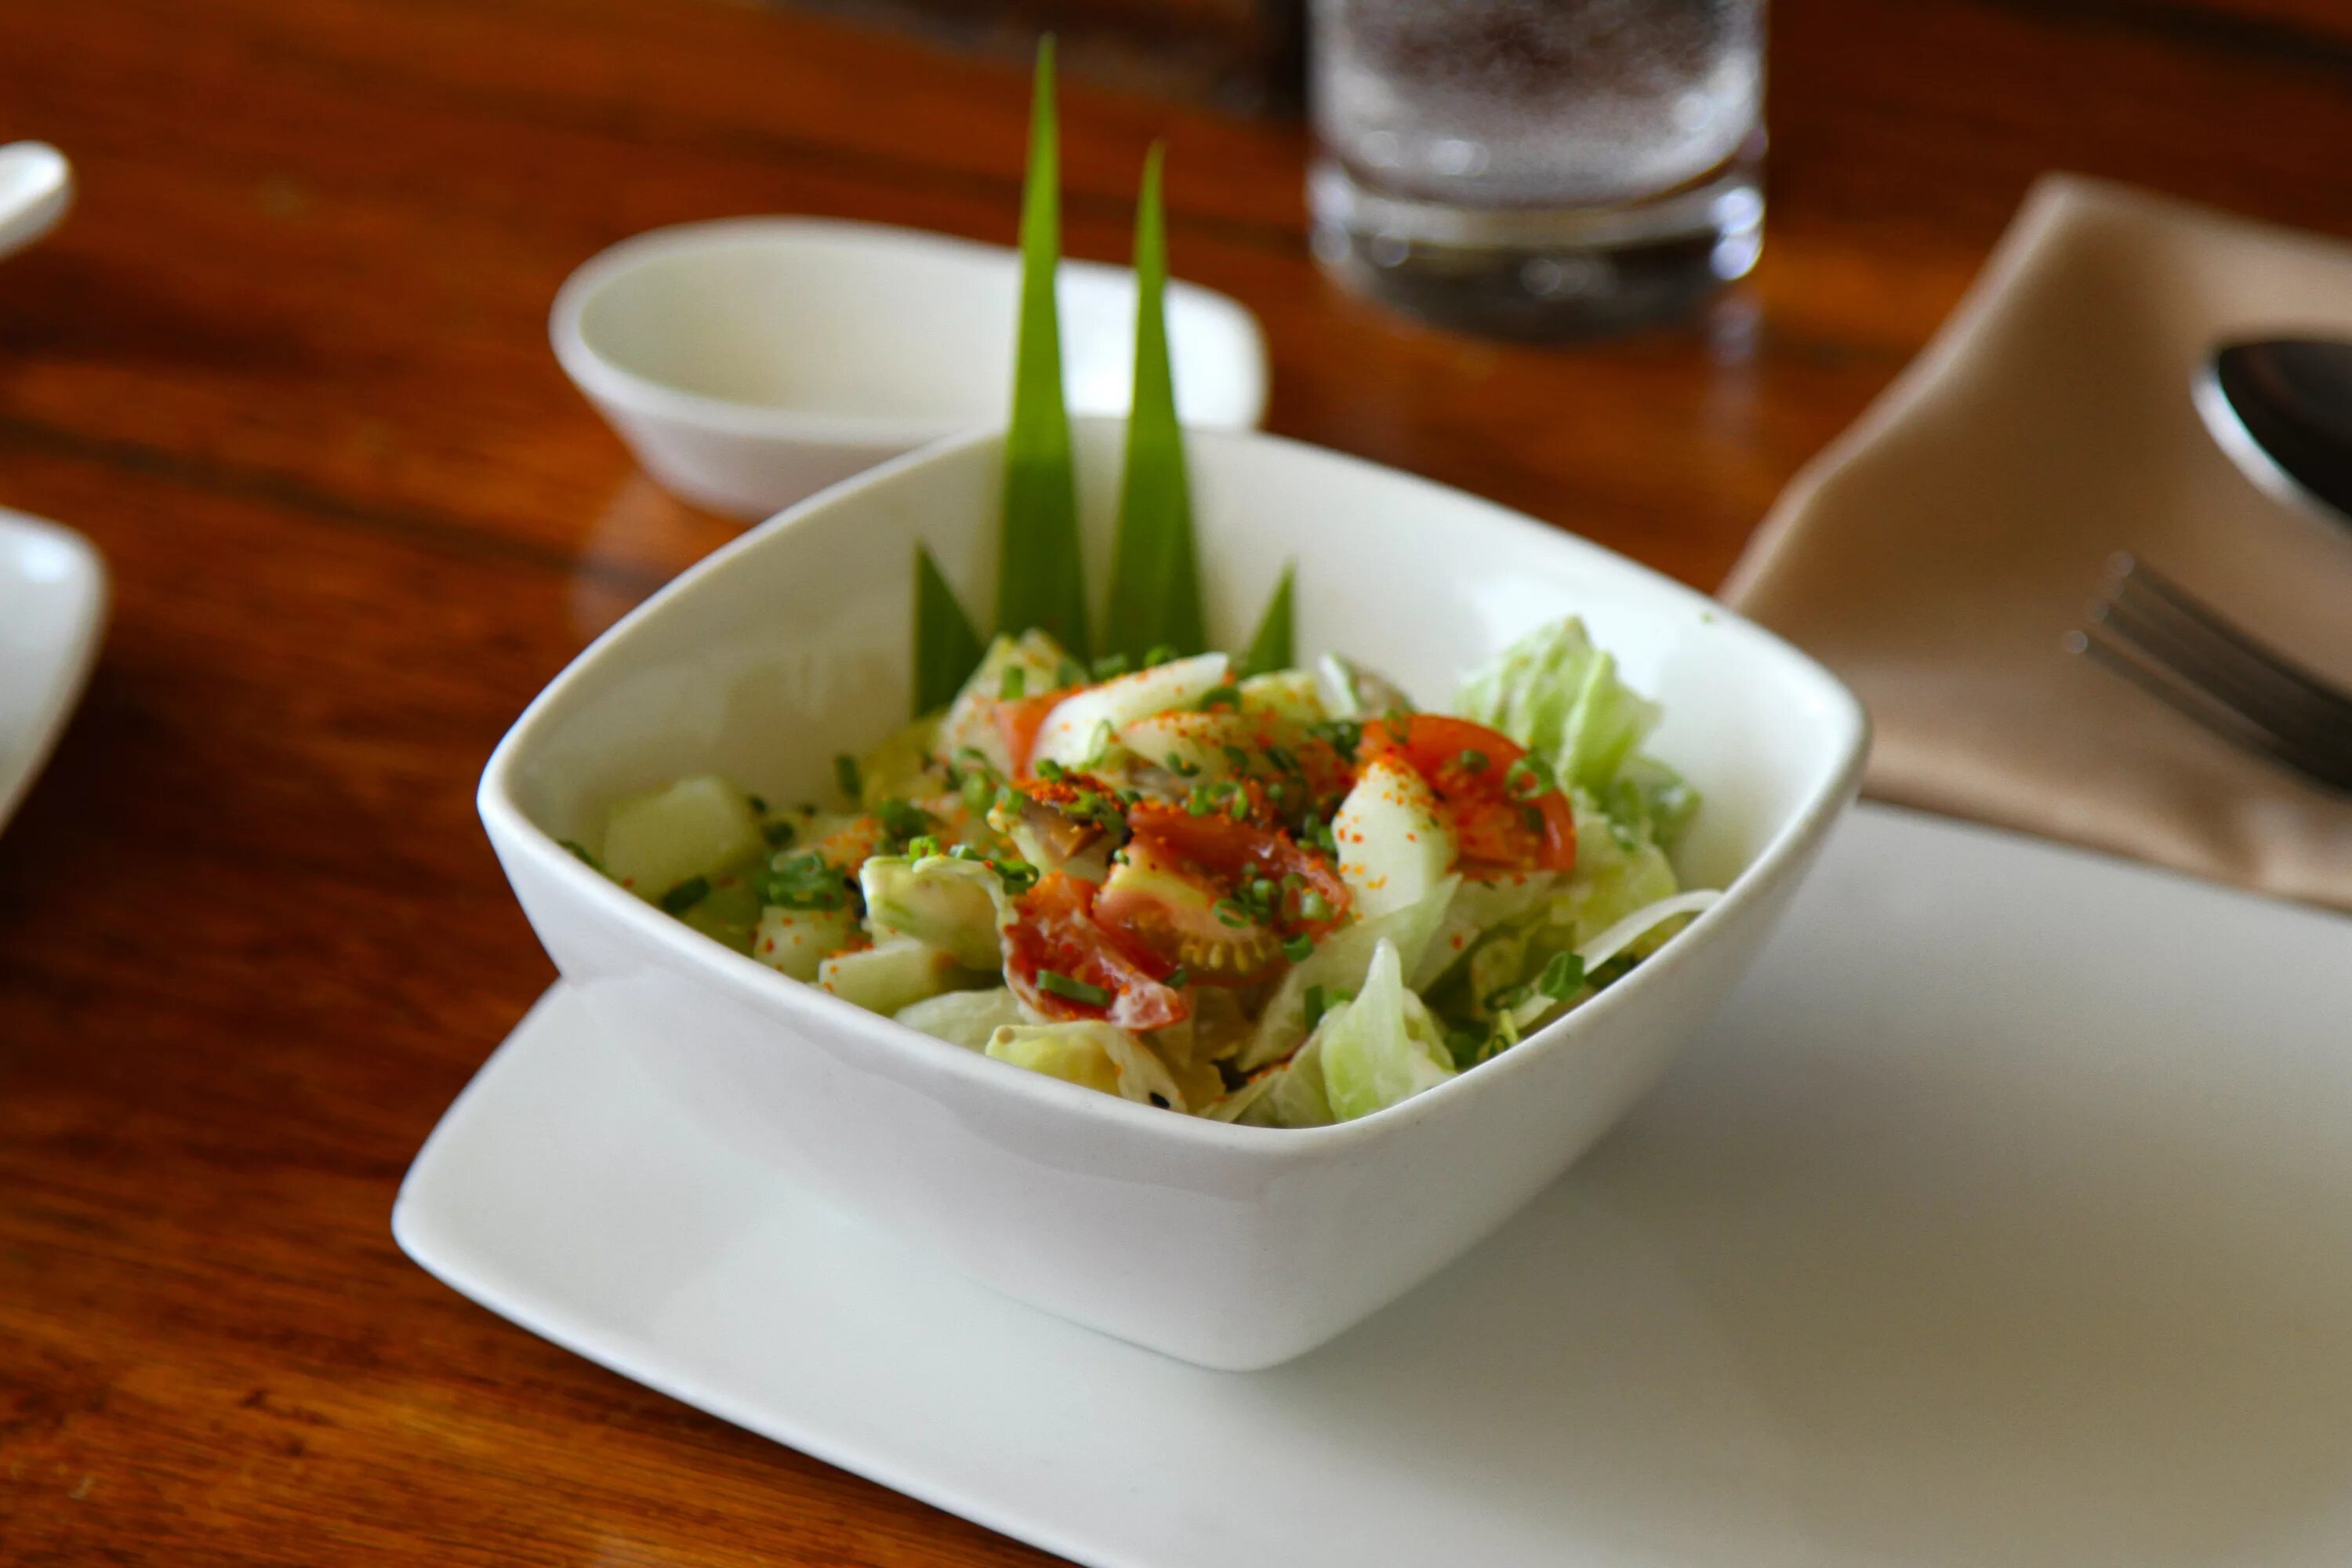 Сельдерей на обед. Еда в глубокой тарелке. Салат в прямоугольной тарелке. Овощной салат в белой чашке фото. Vegetable lunch